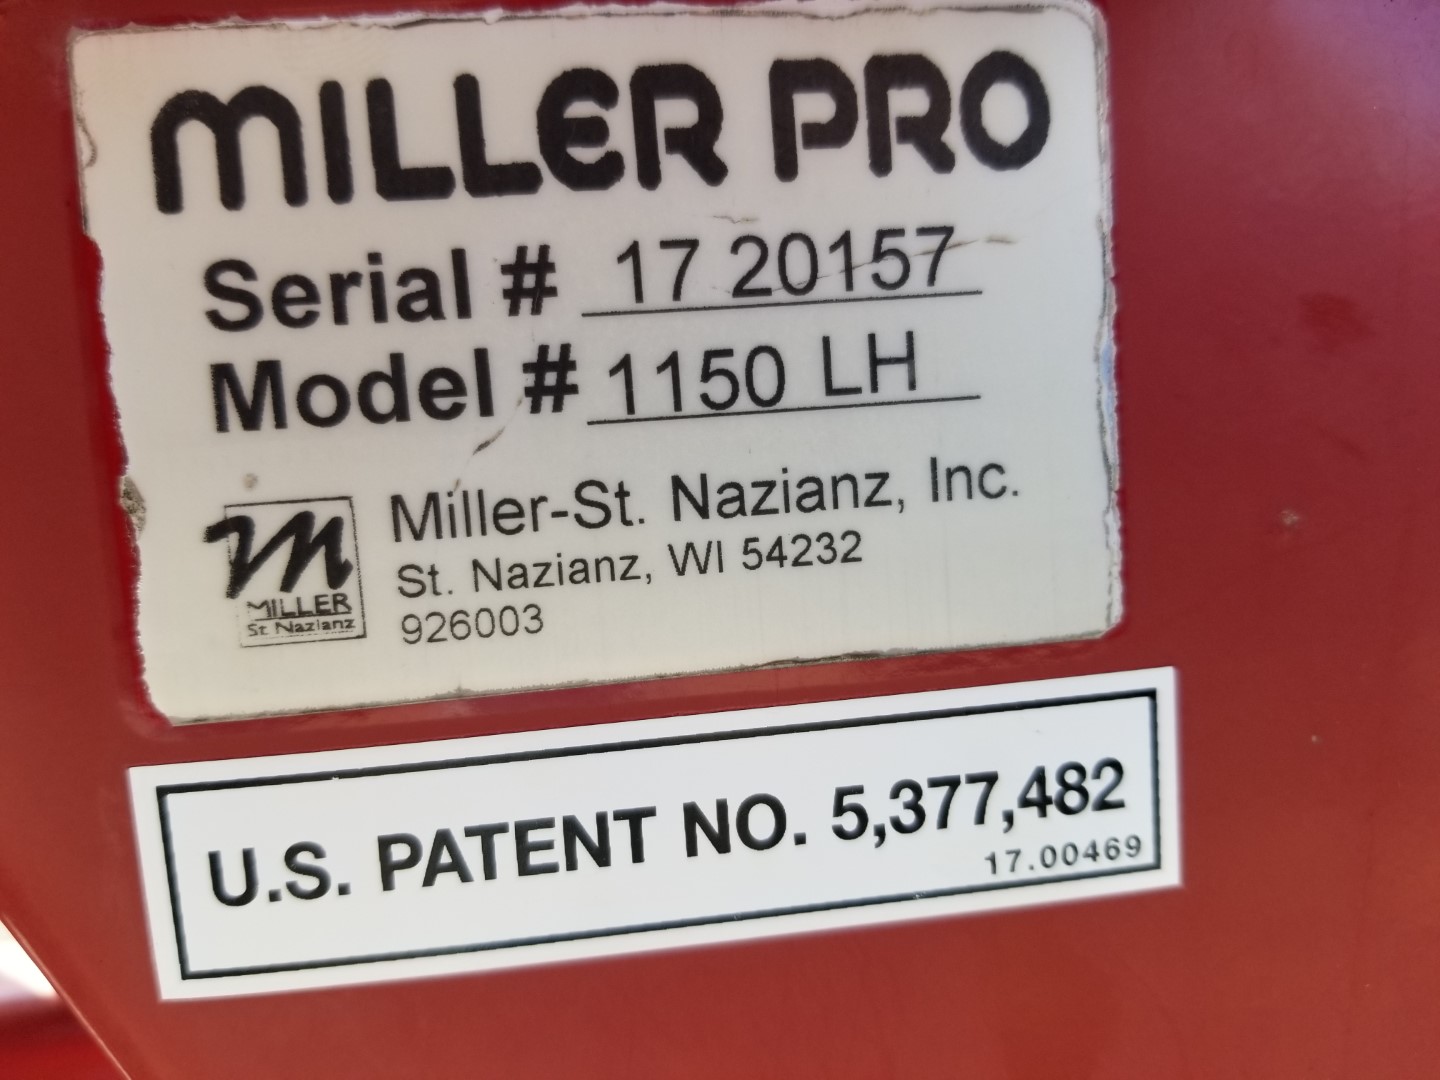 MillerPro1150LH1720157 (1) (Large)